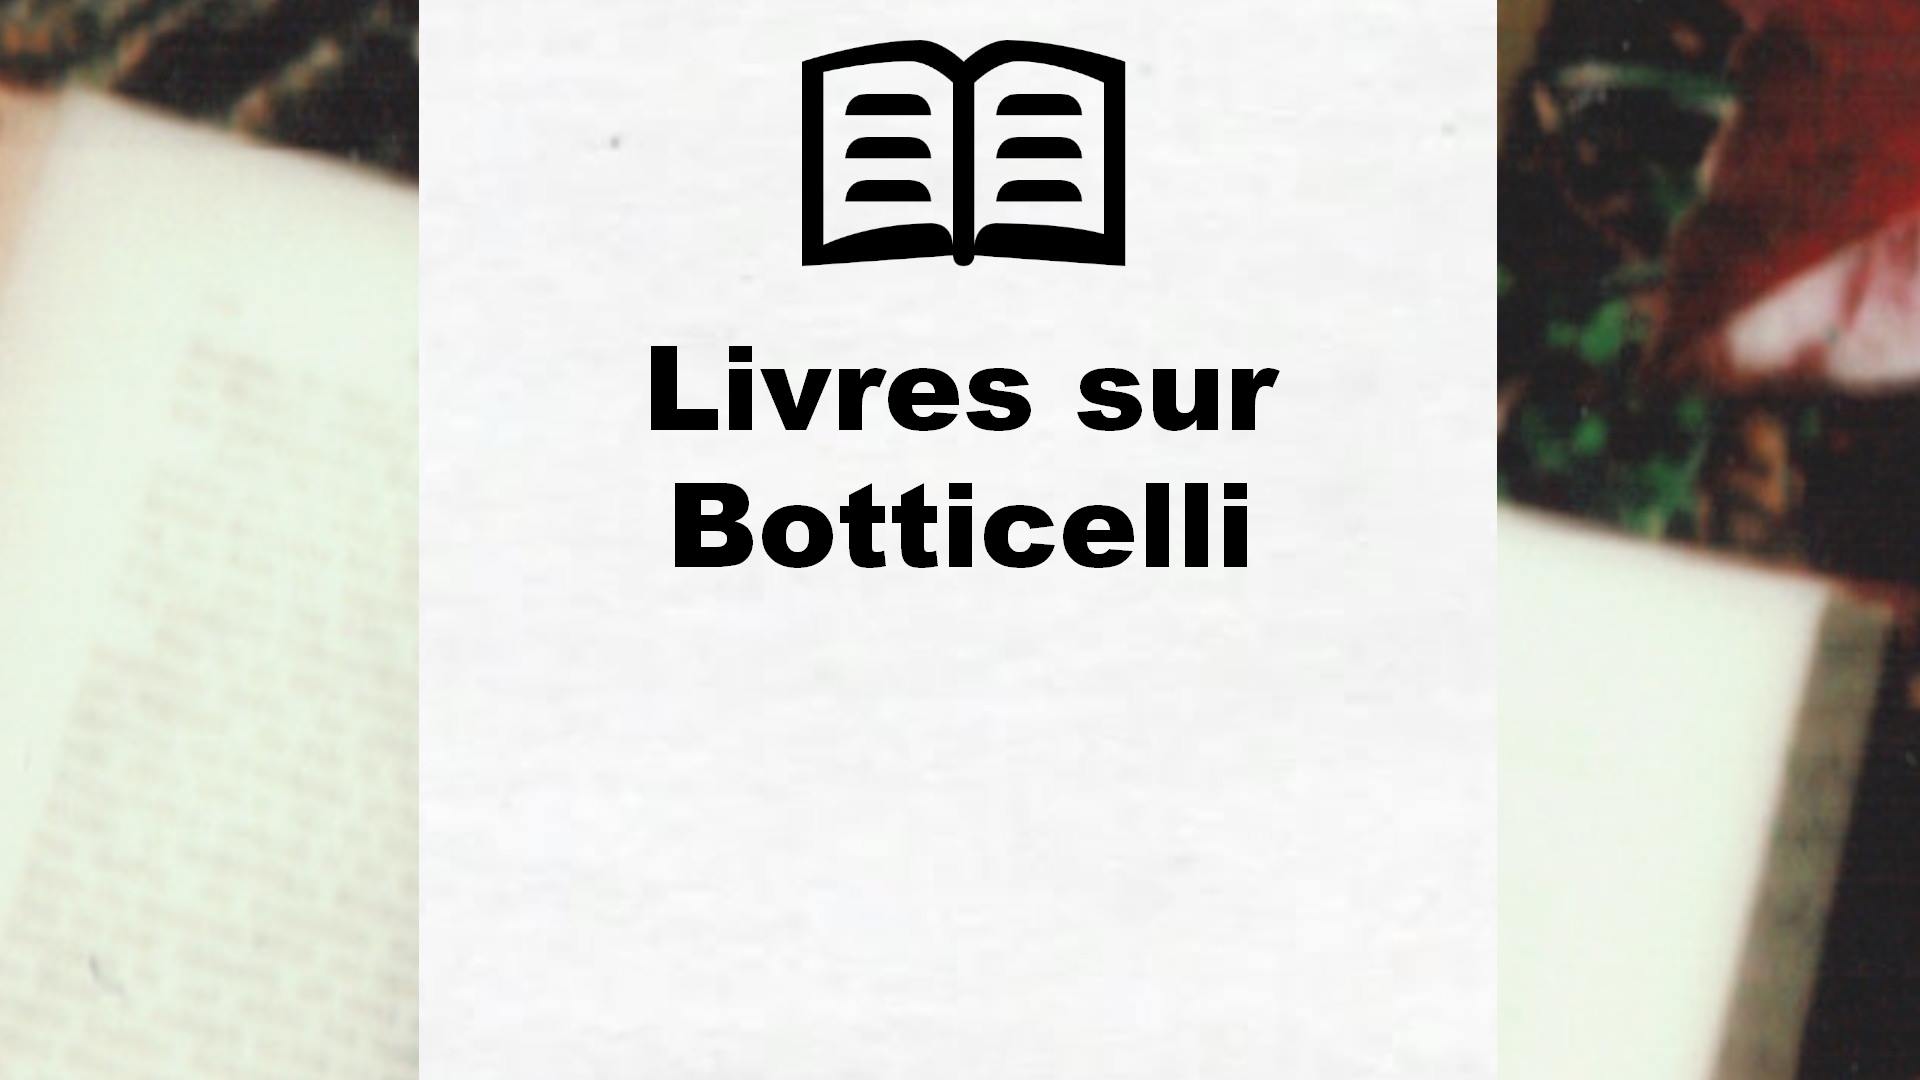 Livres sur Botticelli